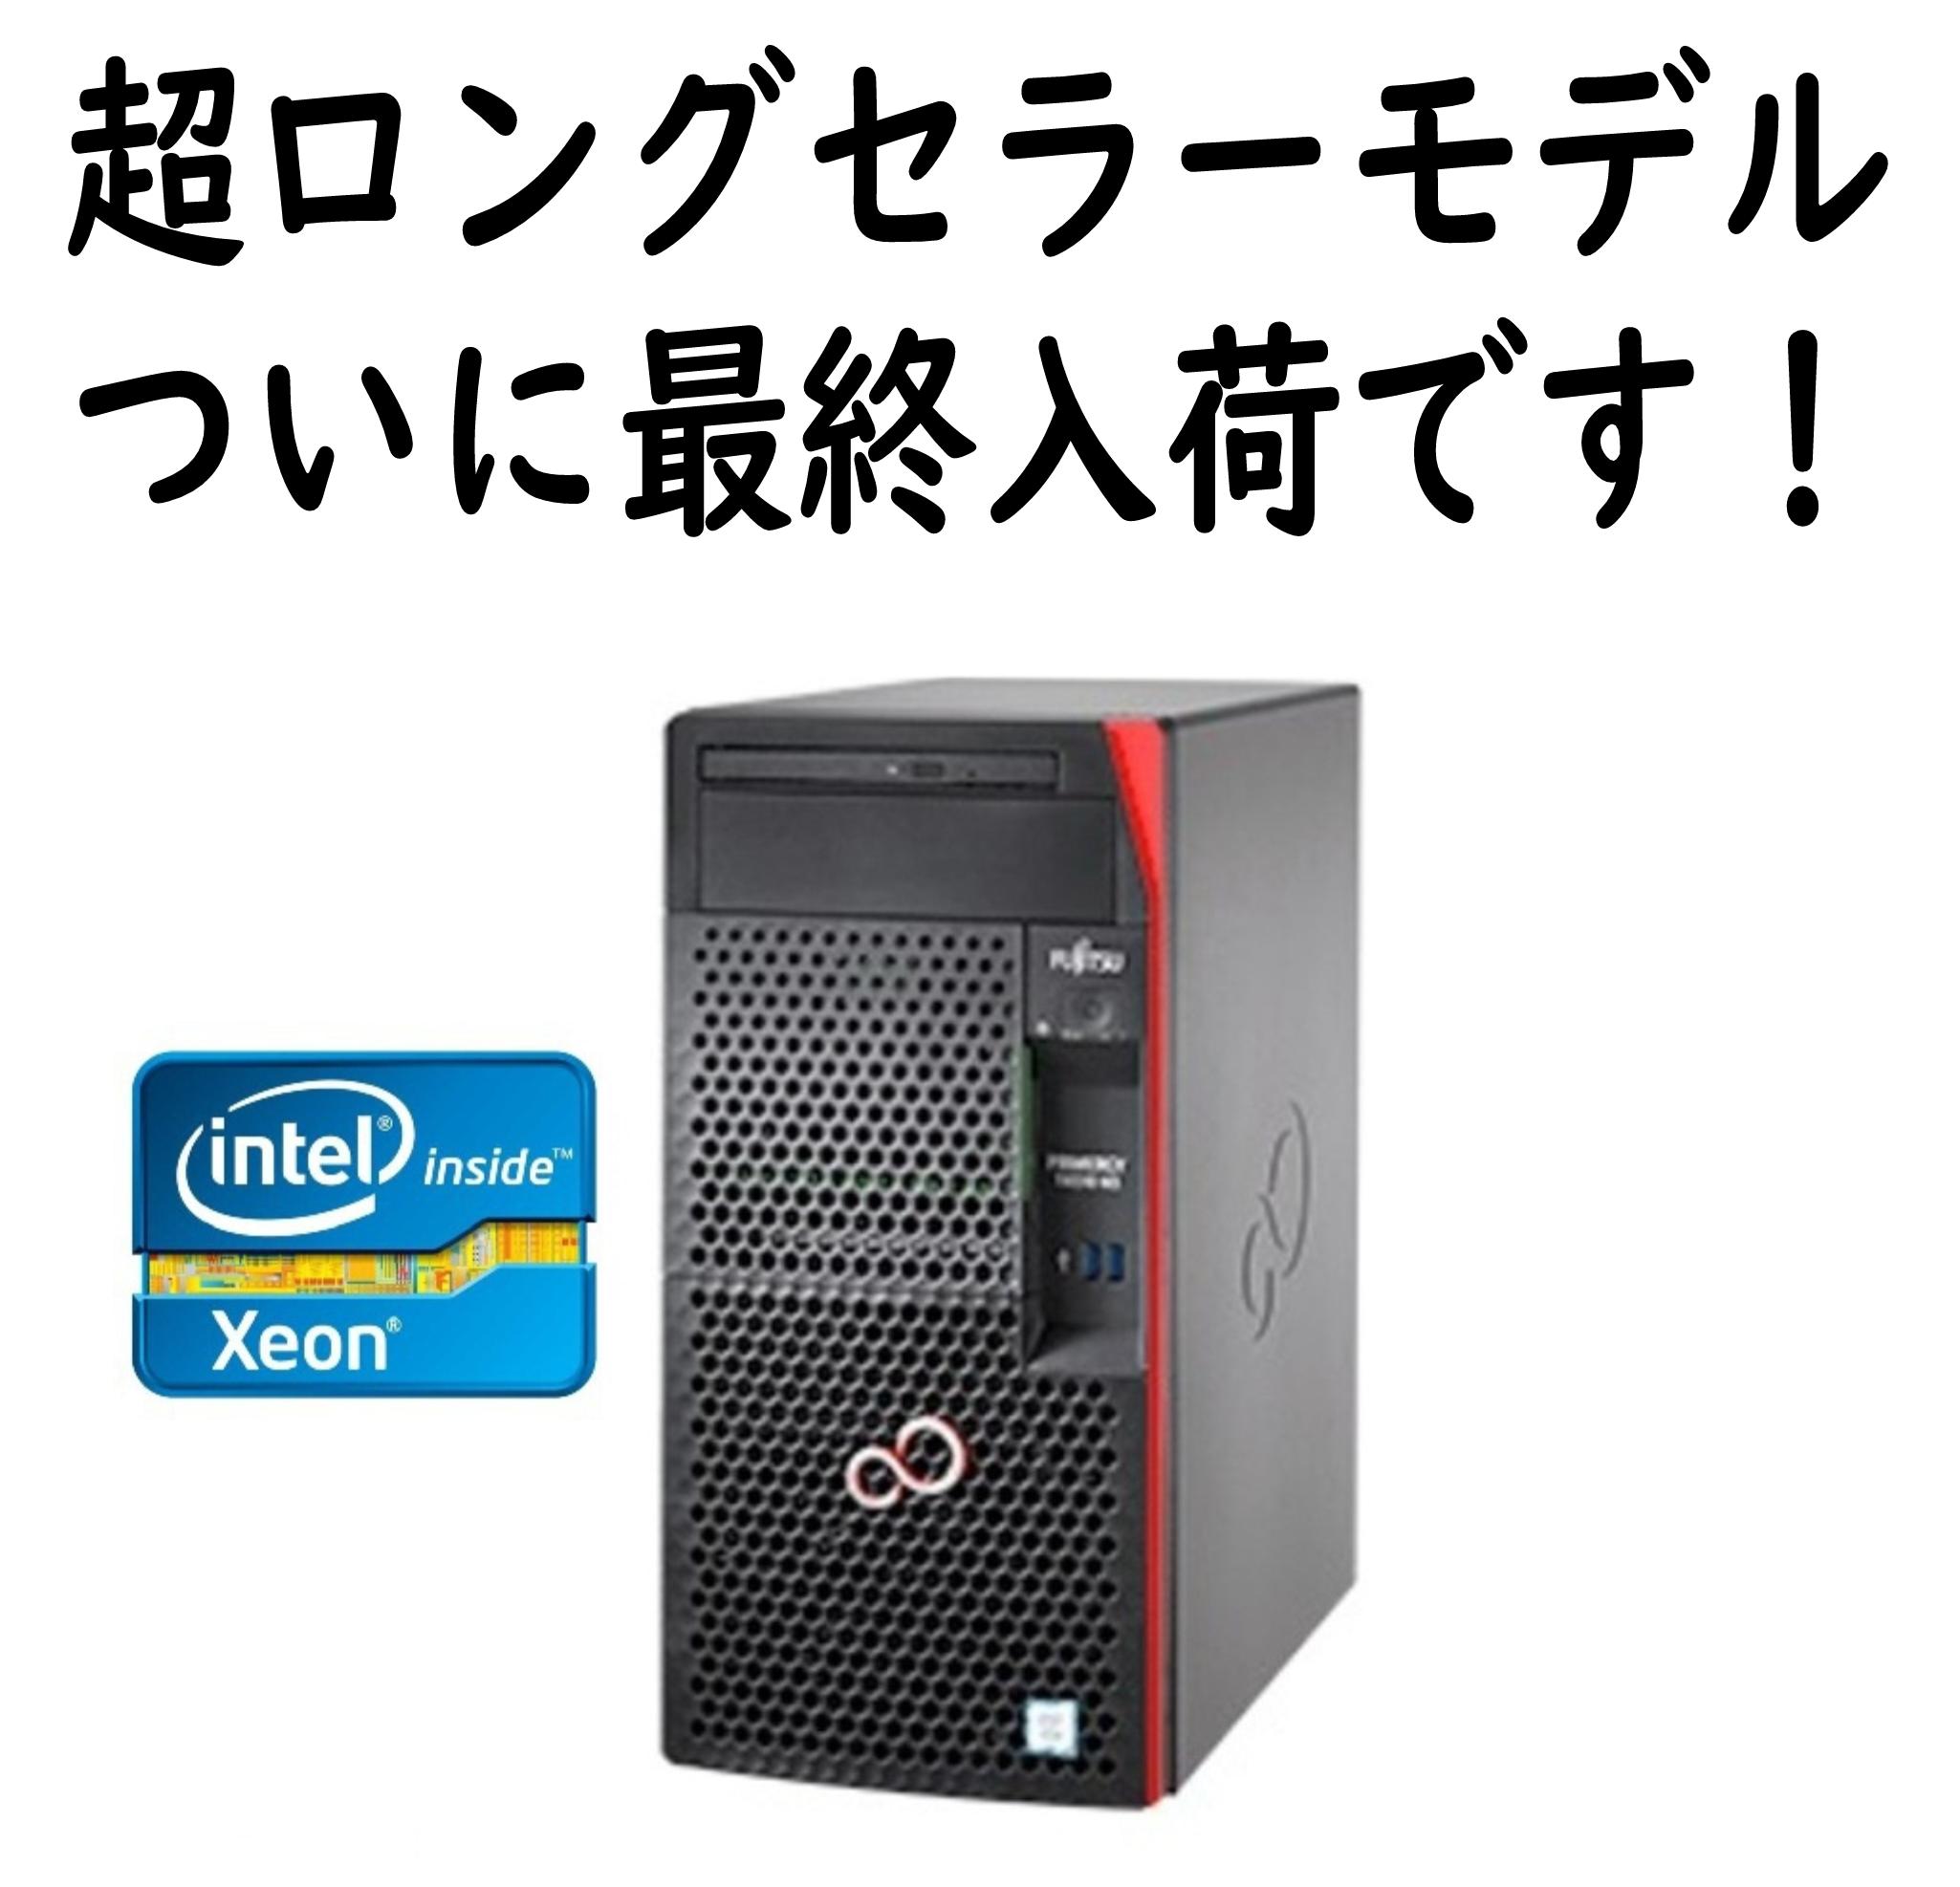 【最終入荷 在庫限り】Fujitsu PRIMERGY TX1310 M3 Xeon E3-1225V6 8GBメモリ ベースモデル